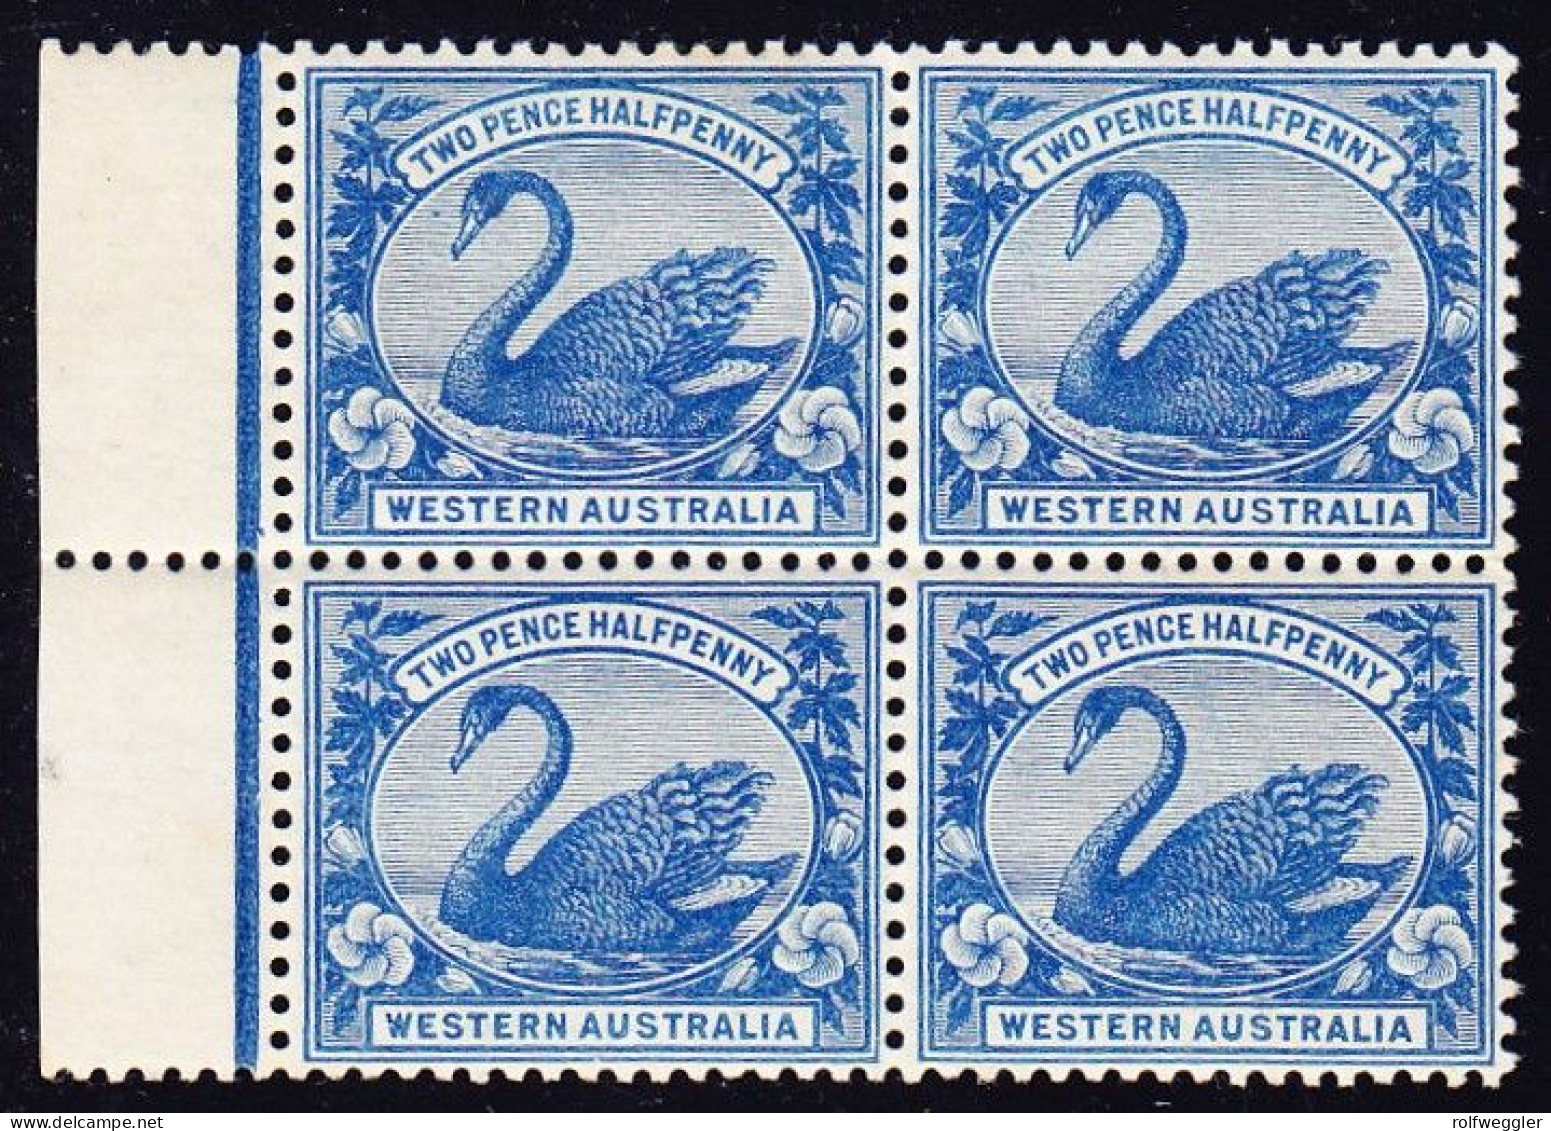 1901 2 1/2d Blau Postfrisch 4er Block Mit Bogenrand. - Mint Stamps